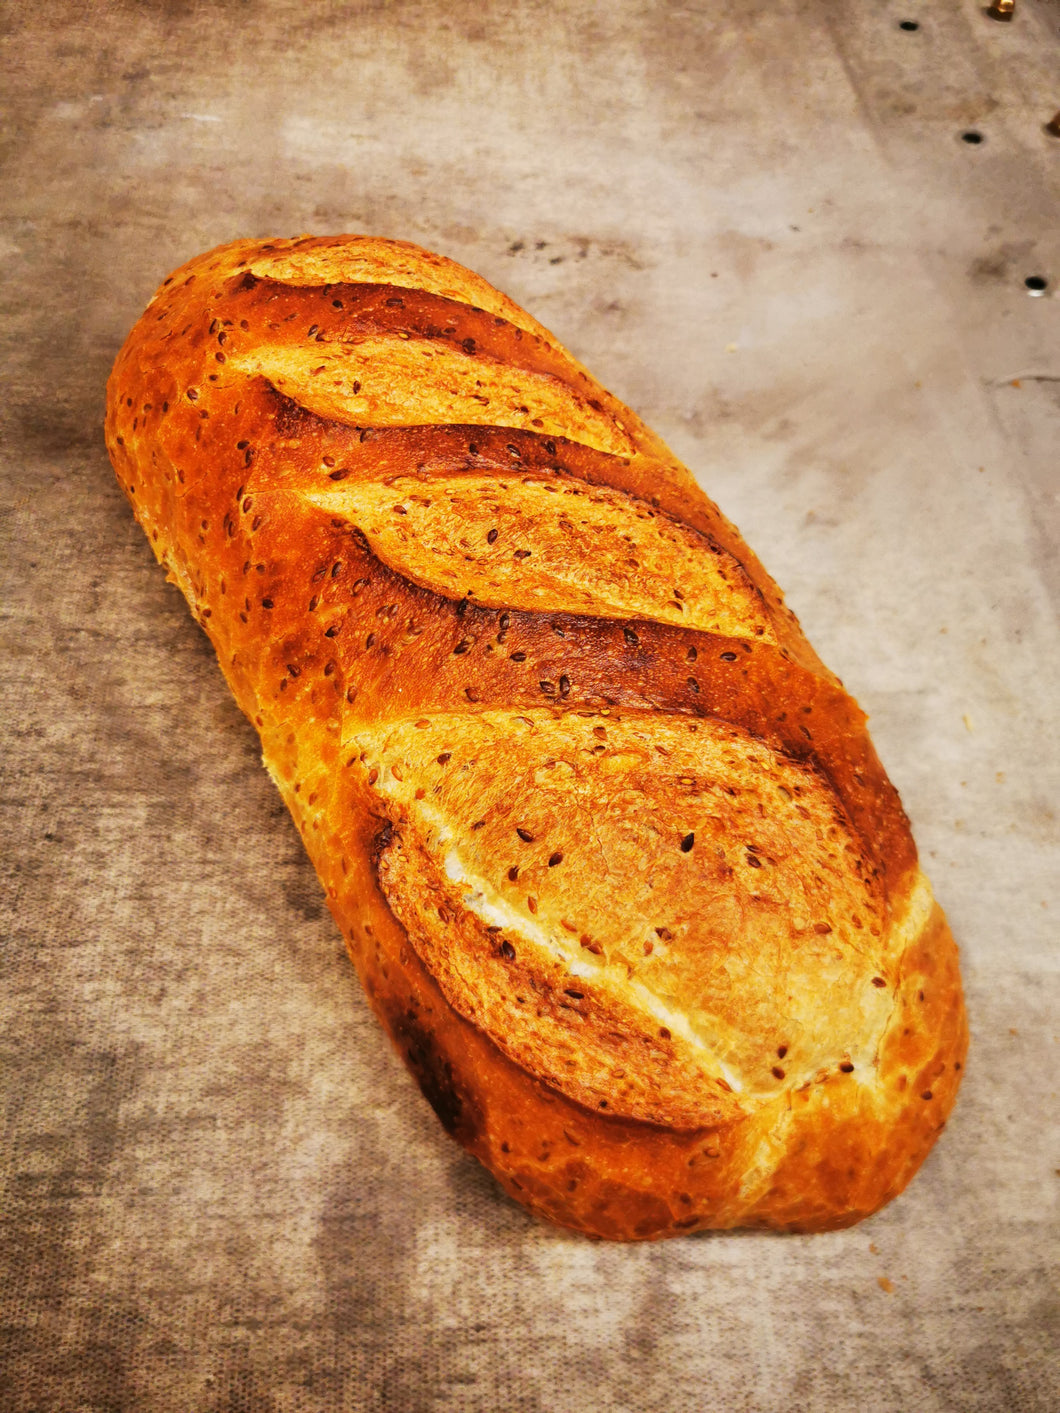 Flax Bread